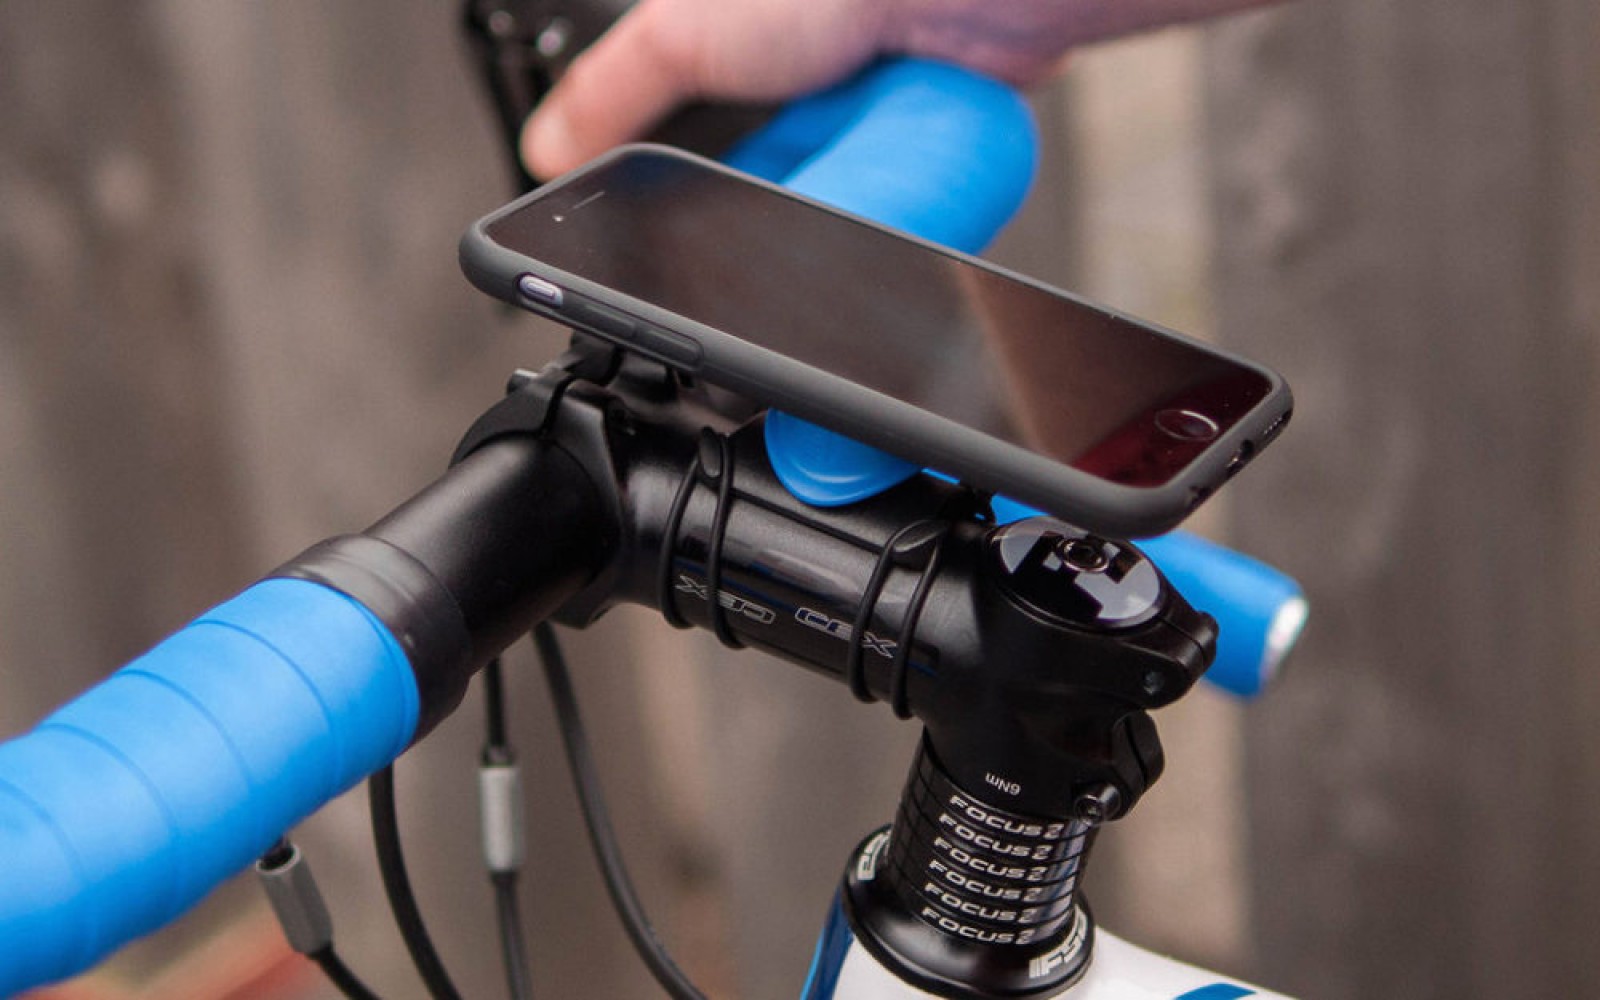 Estrecho Capilla evaluar Las 12 mejores apps para ciclismo y mountain bike